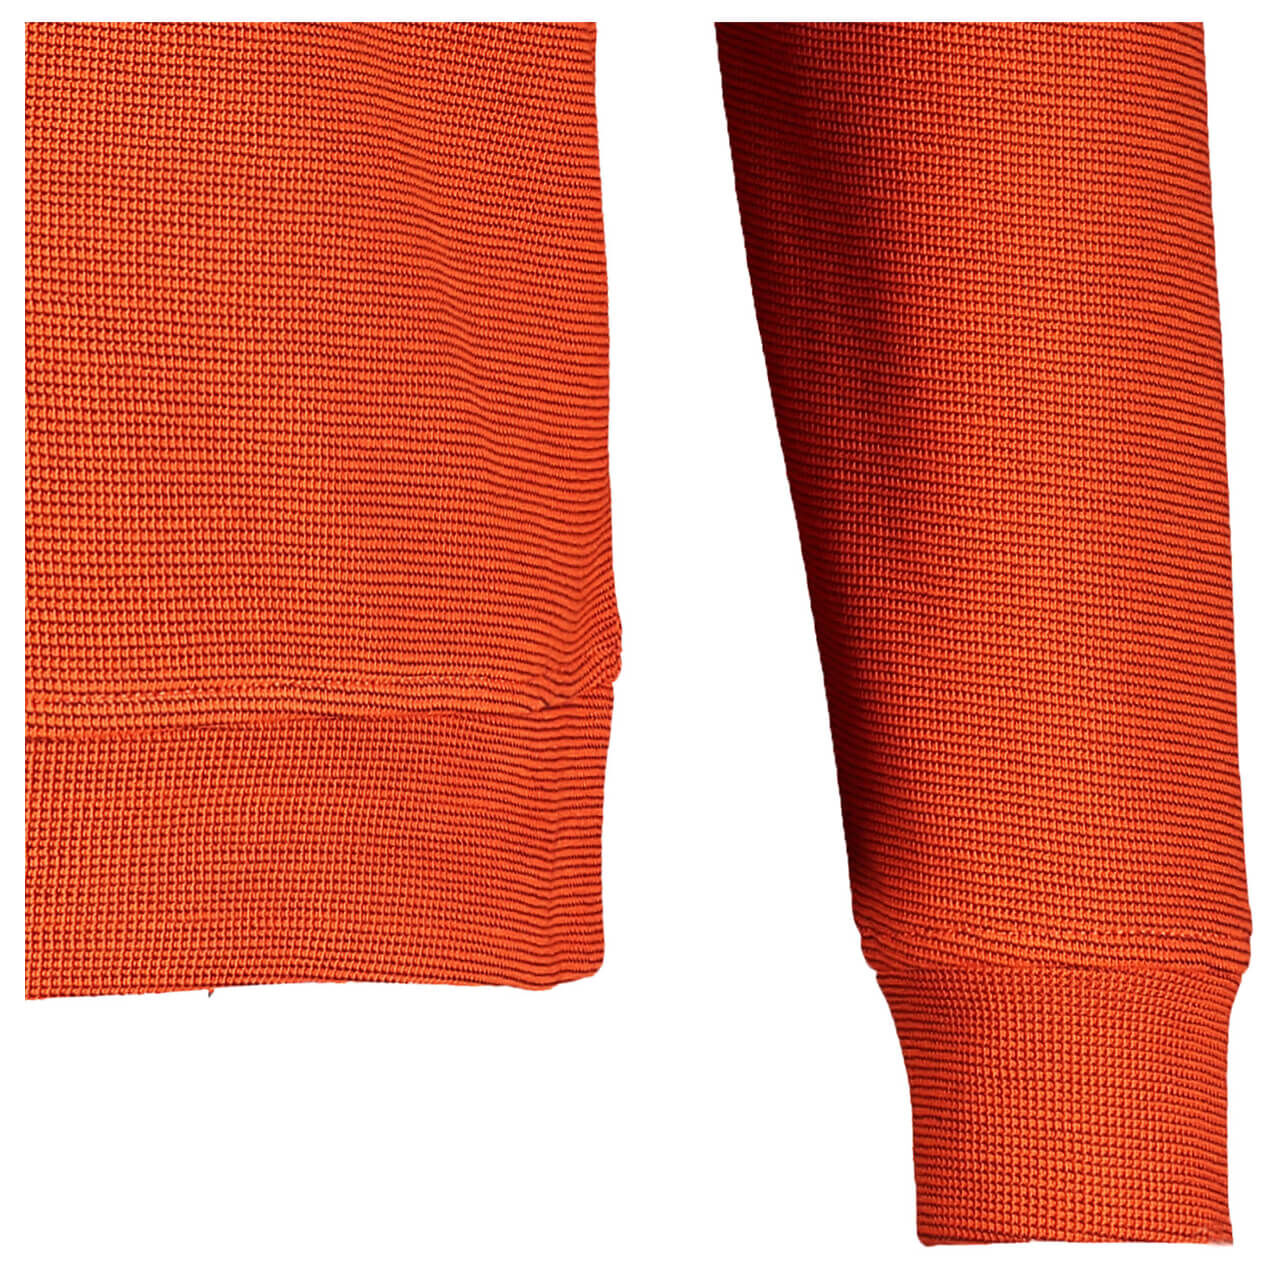 Lerros Troyer Sweatshirt für Herren in Orange, FarbNr.: 335